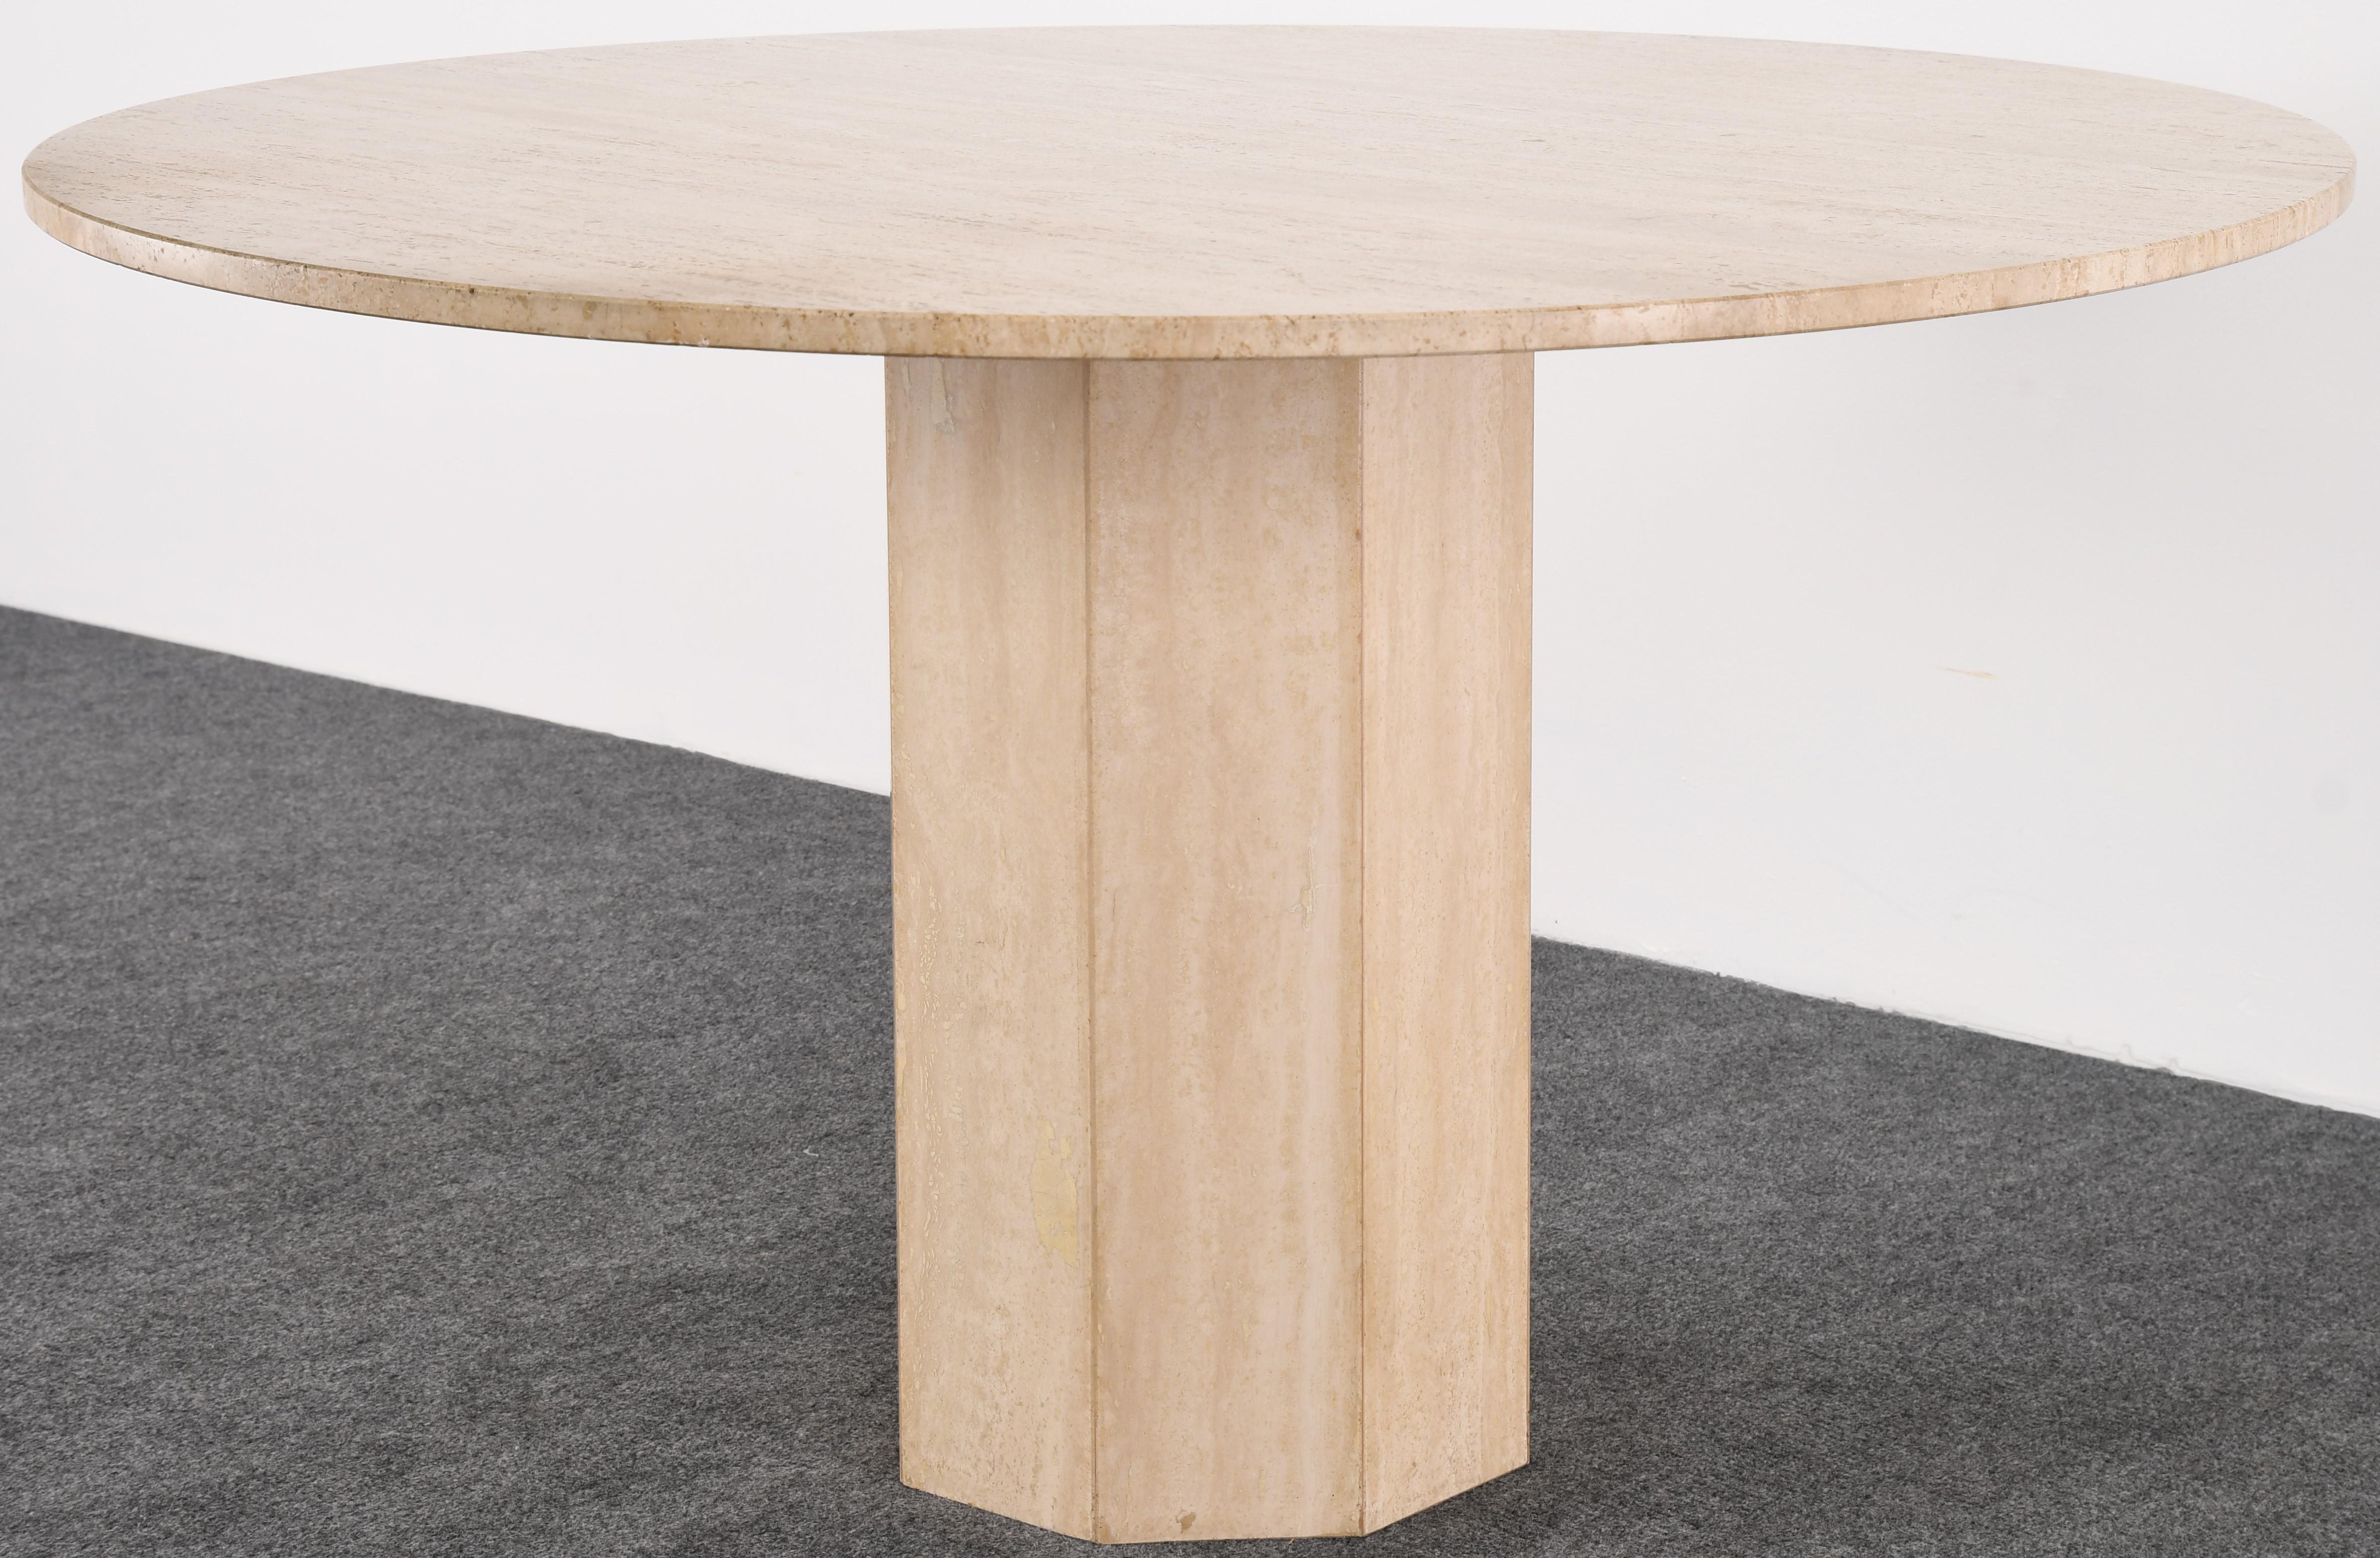 Une belle table à manger ronde en travertin italien naturel. Cette table de style Roche Bobois a une base octogonale à piédestal. Livré en deux sections pour un assemblage facile. 

Dimensions : 28.5